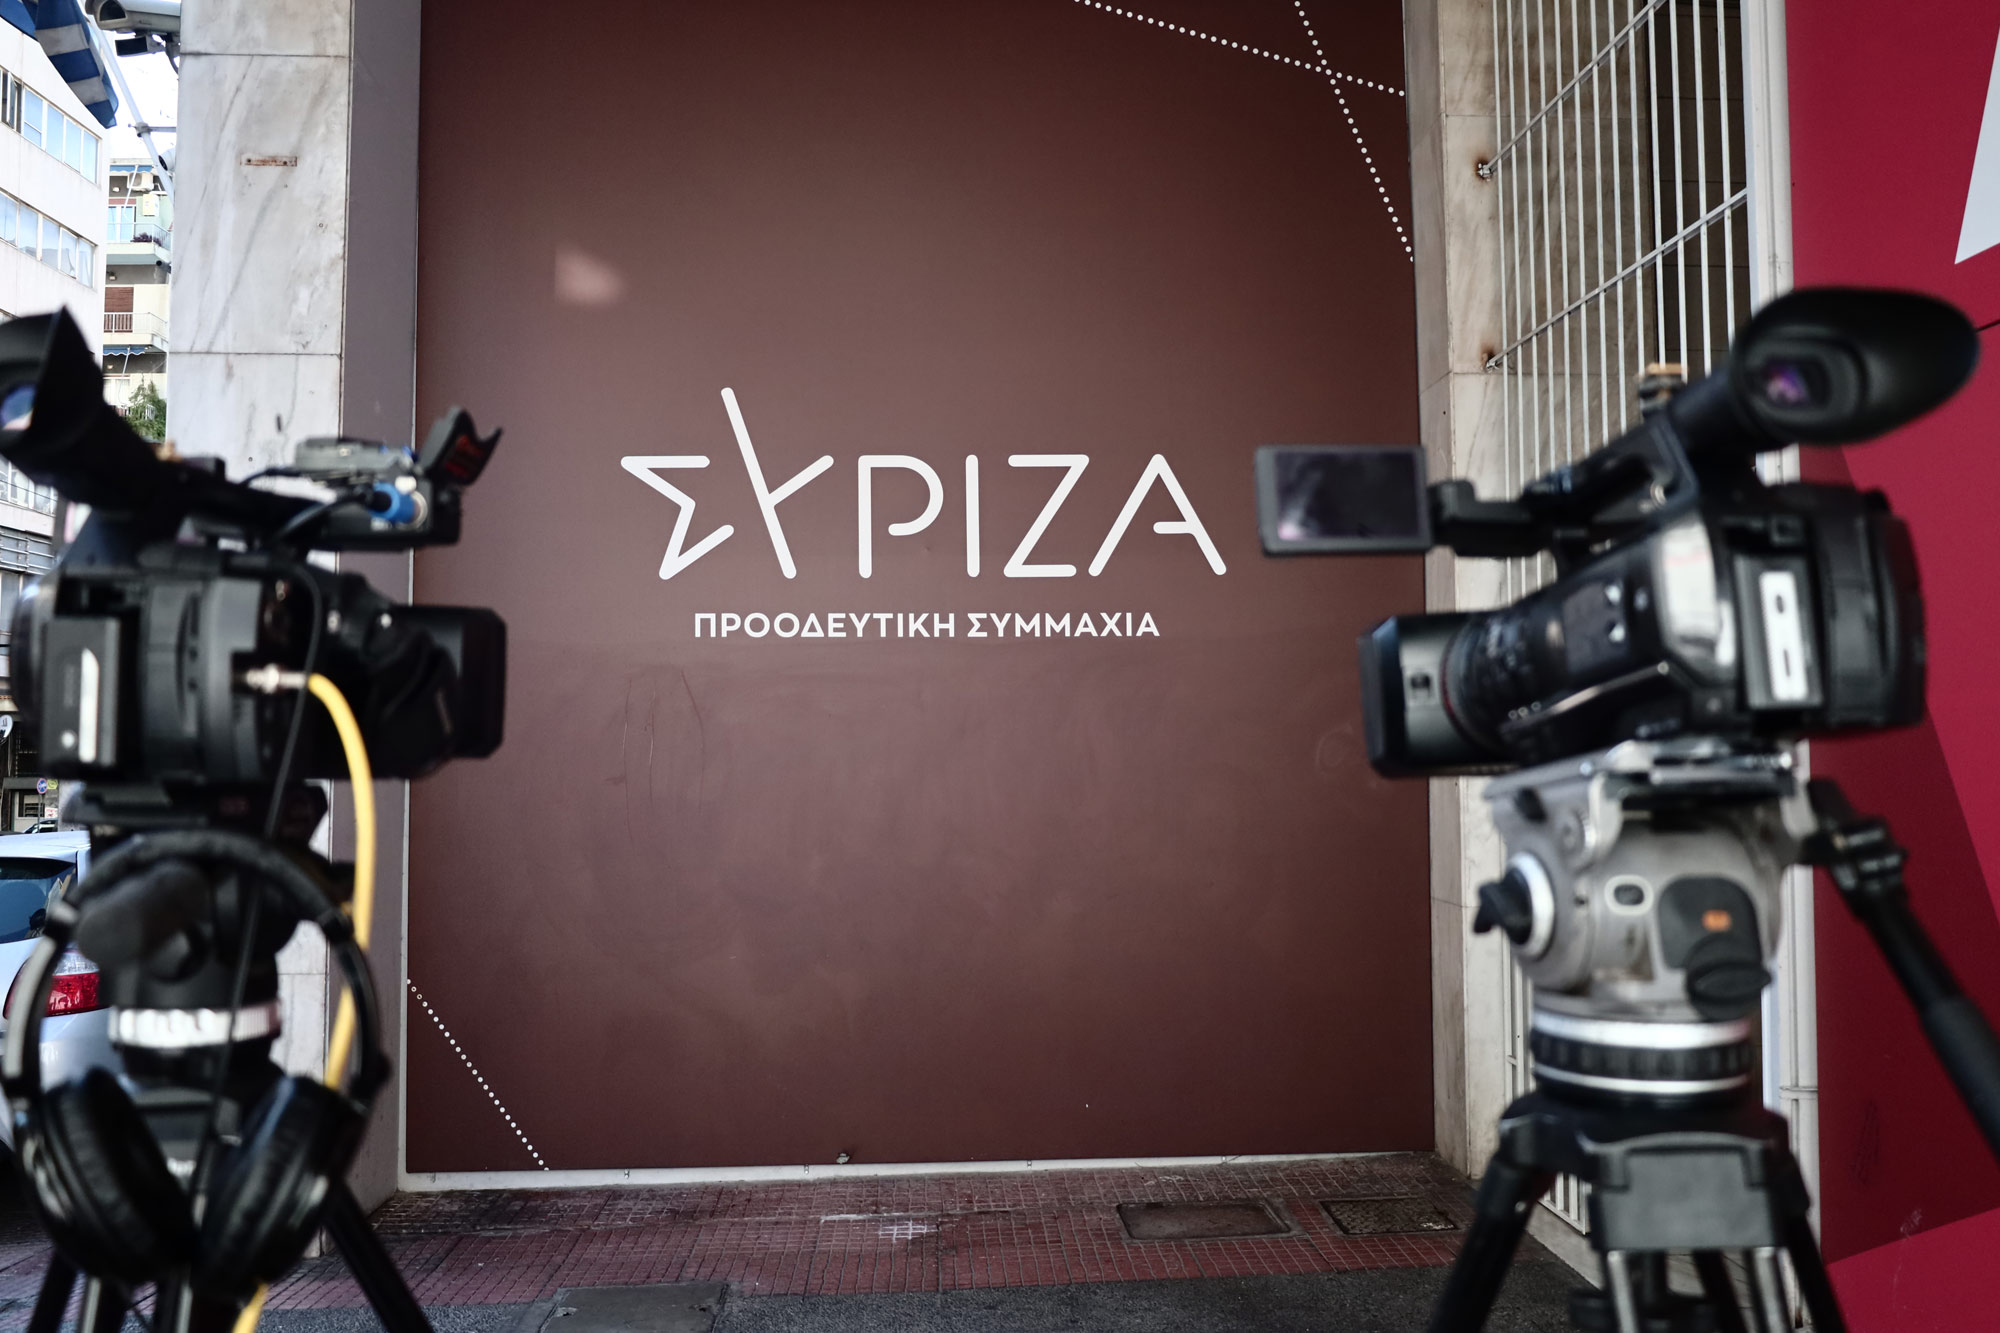 ΣΥΡΙΖΑ ΠΣ: Ηχηρές αποχωρήσεις Σκουρλέτη, Βούτση και αίτημα Κασσελάκη για εσωτερικό δημοψήφισμα ενόψει της κρίσιμης συνεδρίασης της Κ.Ε.